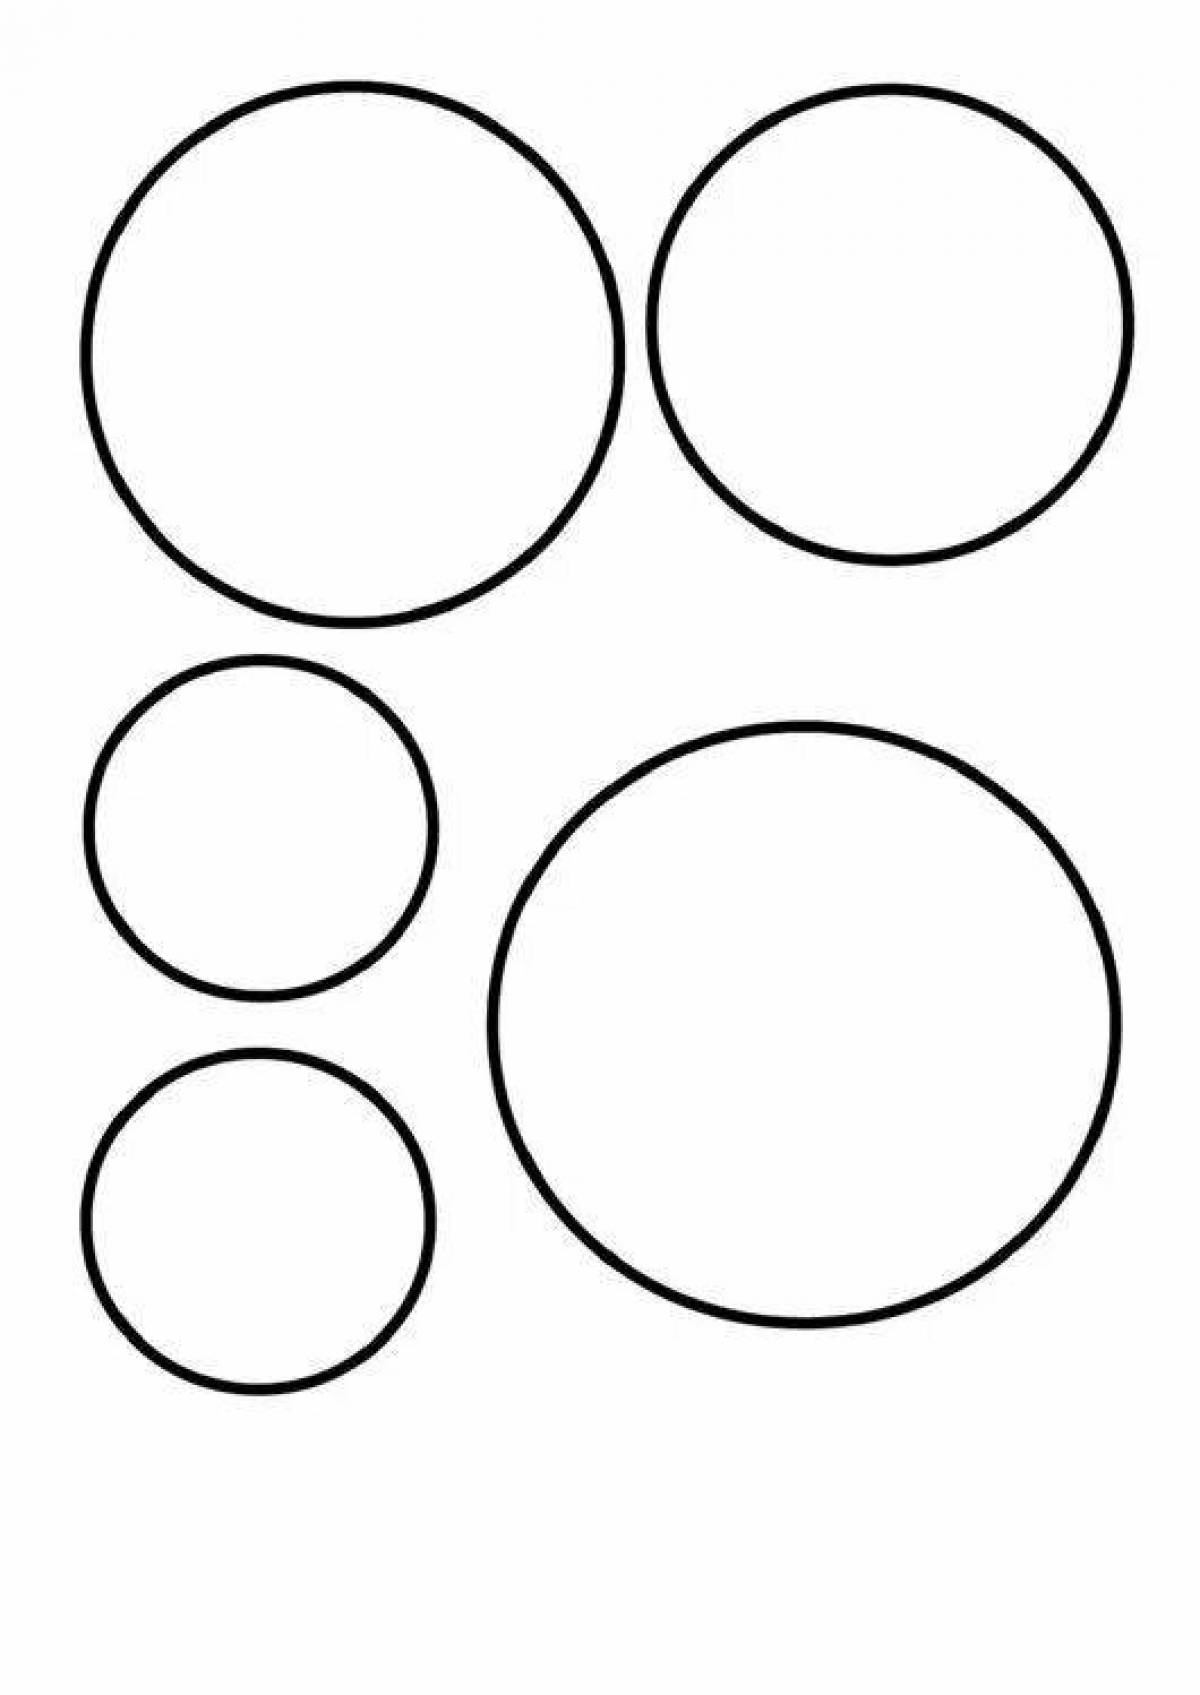 Coloring complex circles